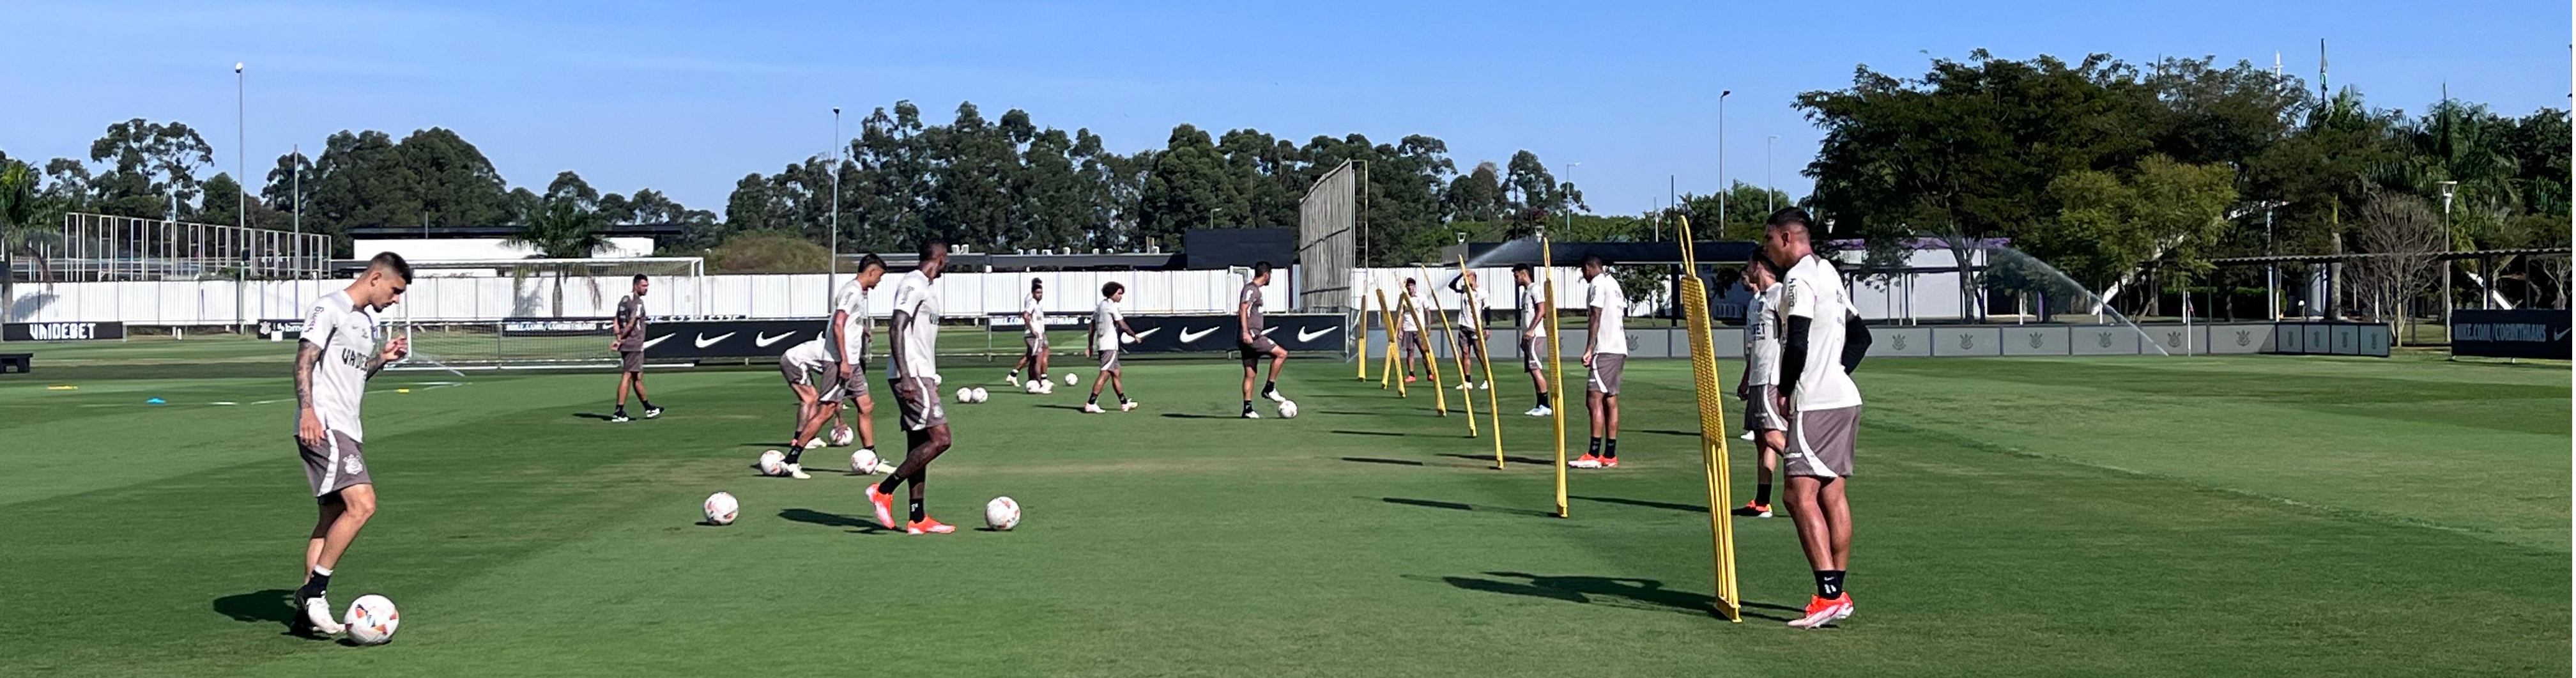 Futebol masculino: Corinthians faz primeiro treino de olho no Argentinos Juniors